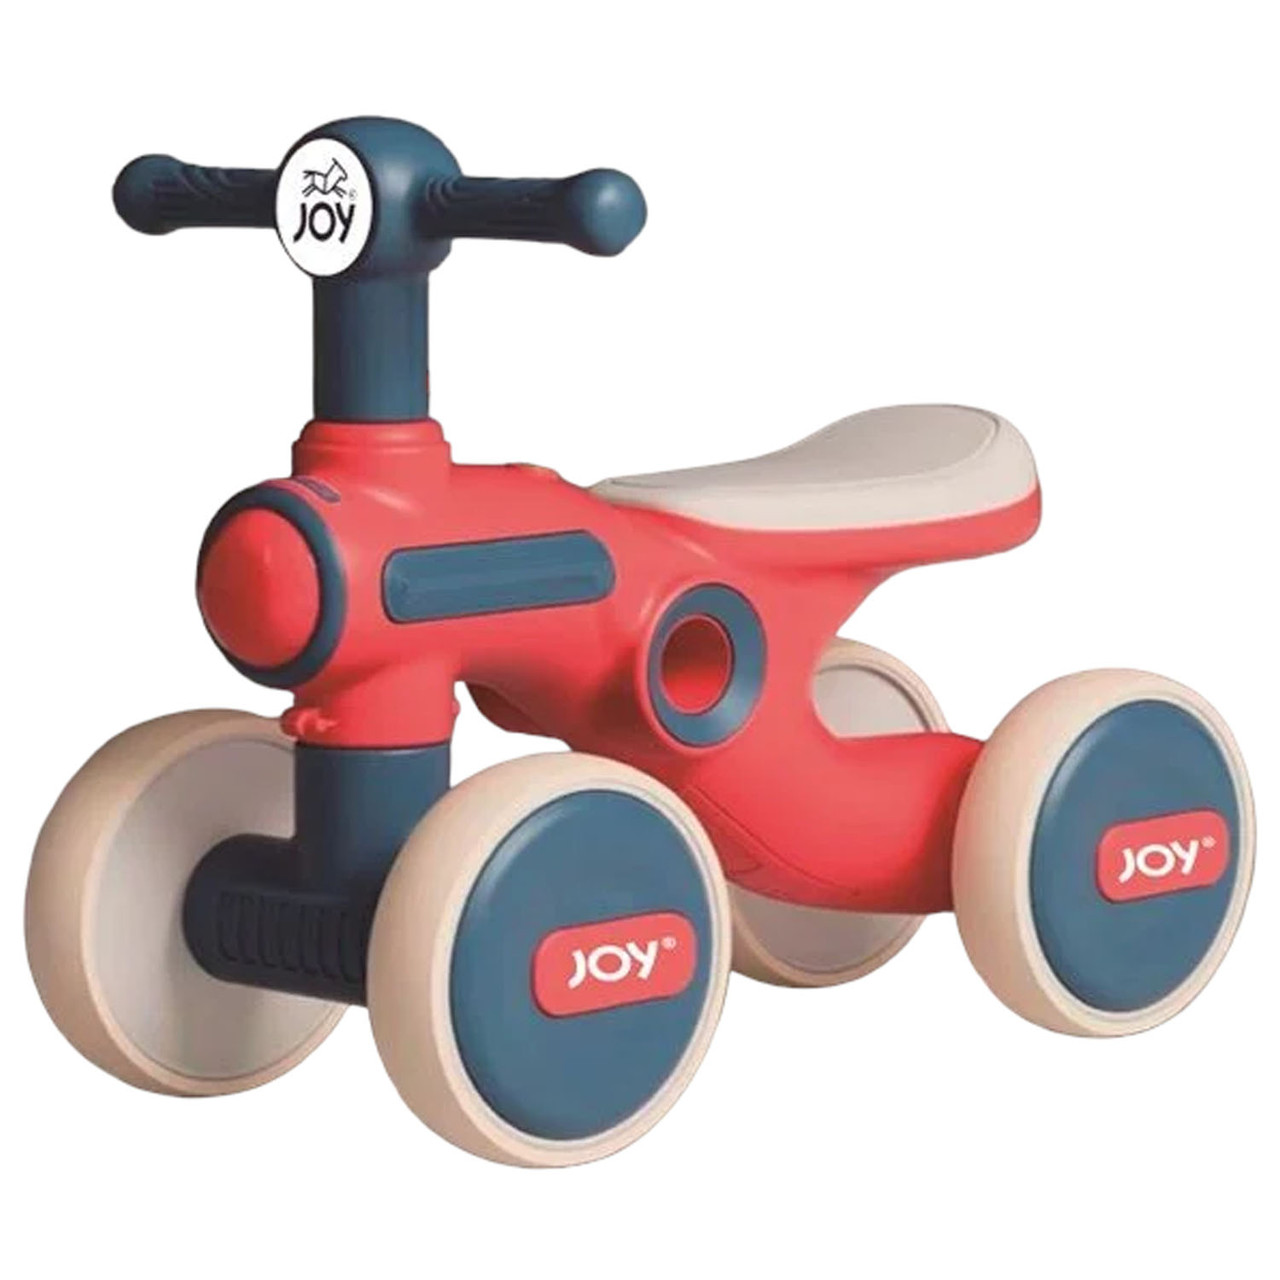 Біговел чотириколісний JOY (колеса 6", рама пластикова, підсвічування, звук) TL-91-147